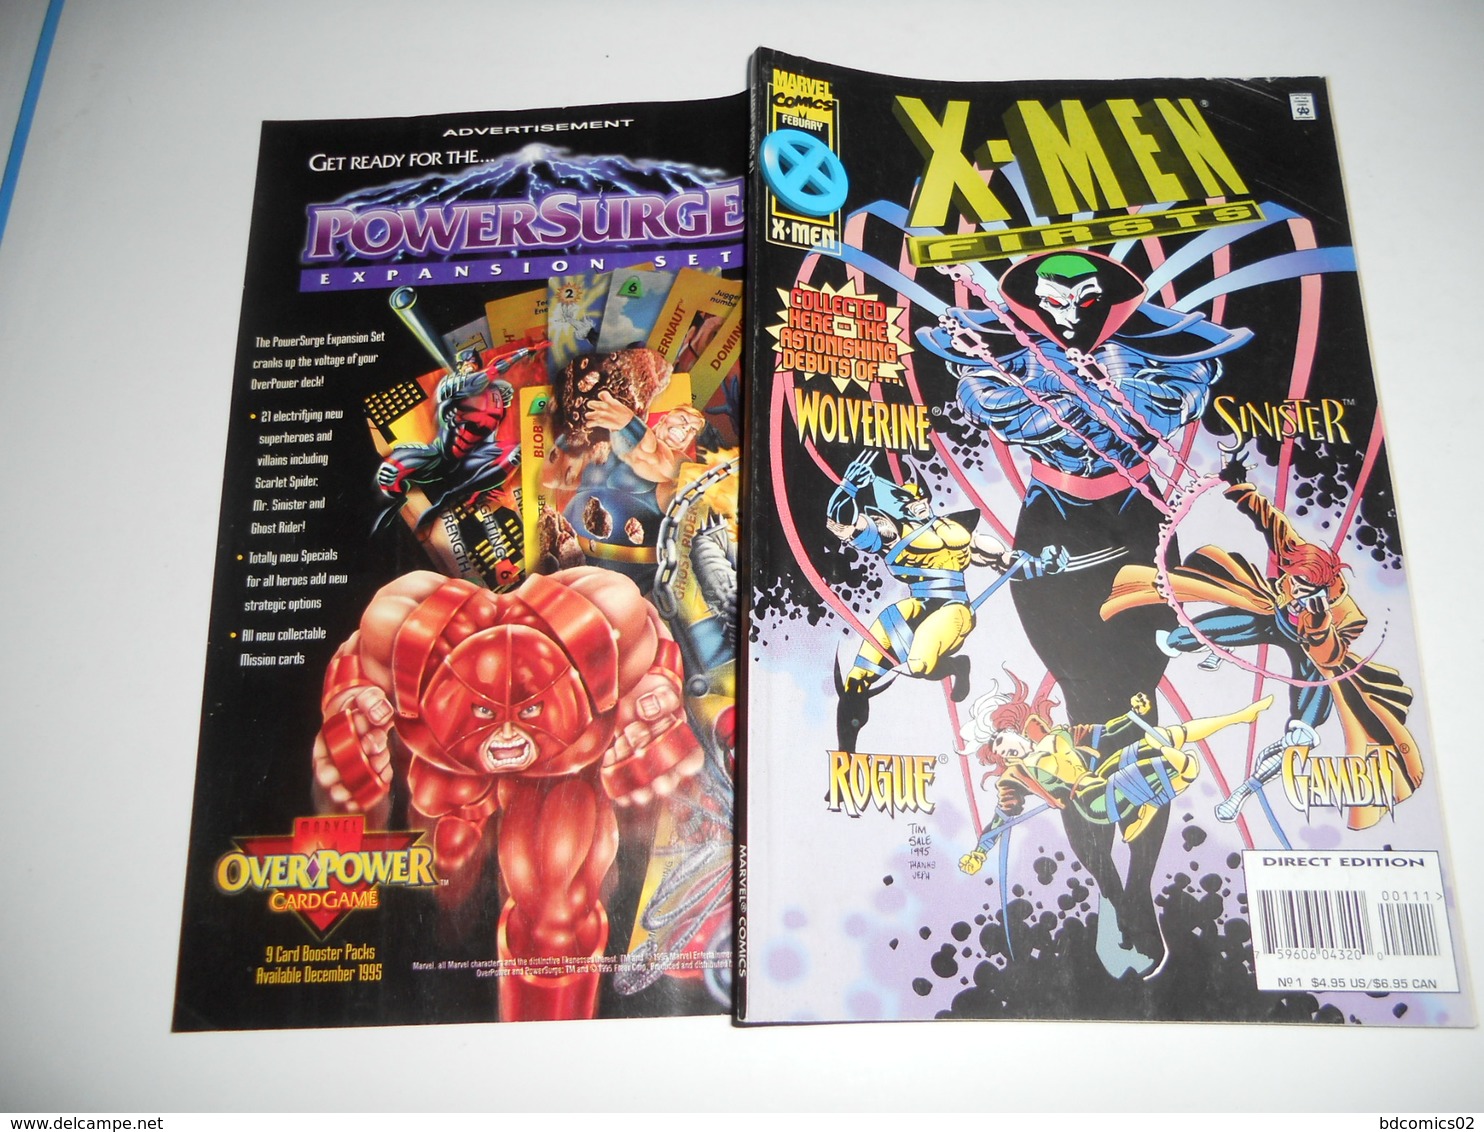 Marvel Comics - X-Men Firsts - Vol 1 - No 1 - February 1996 EN V O - Marvel